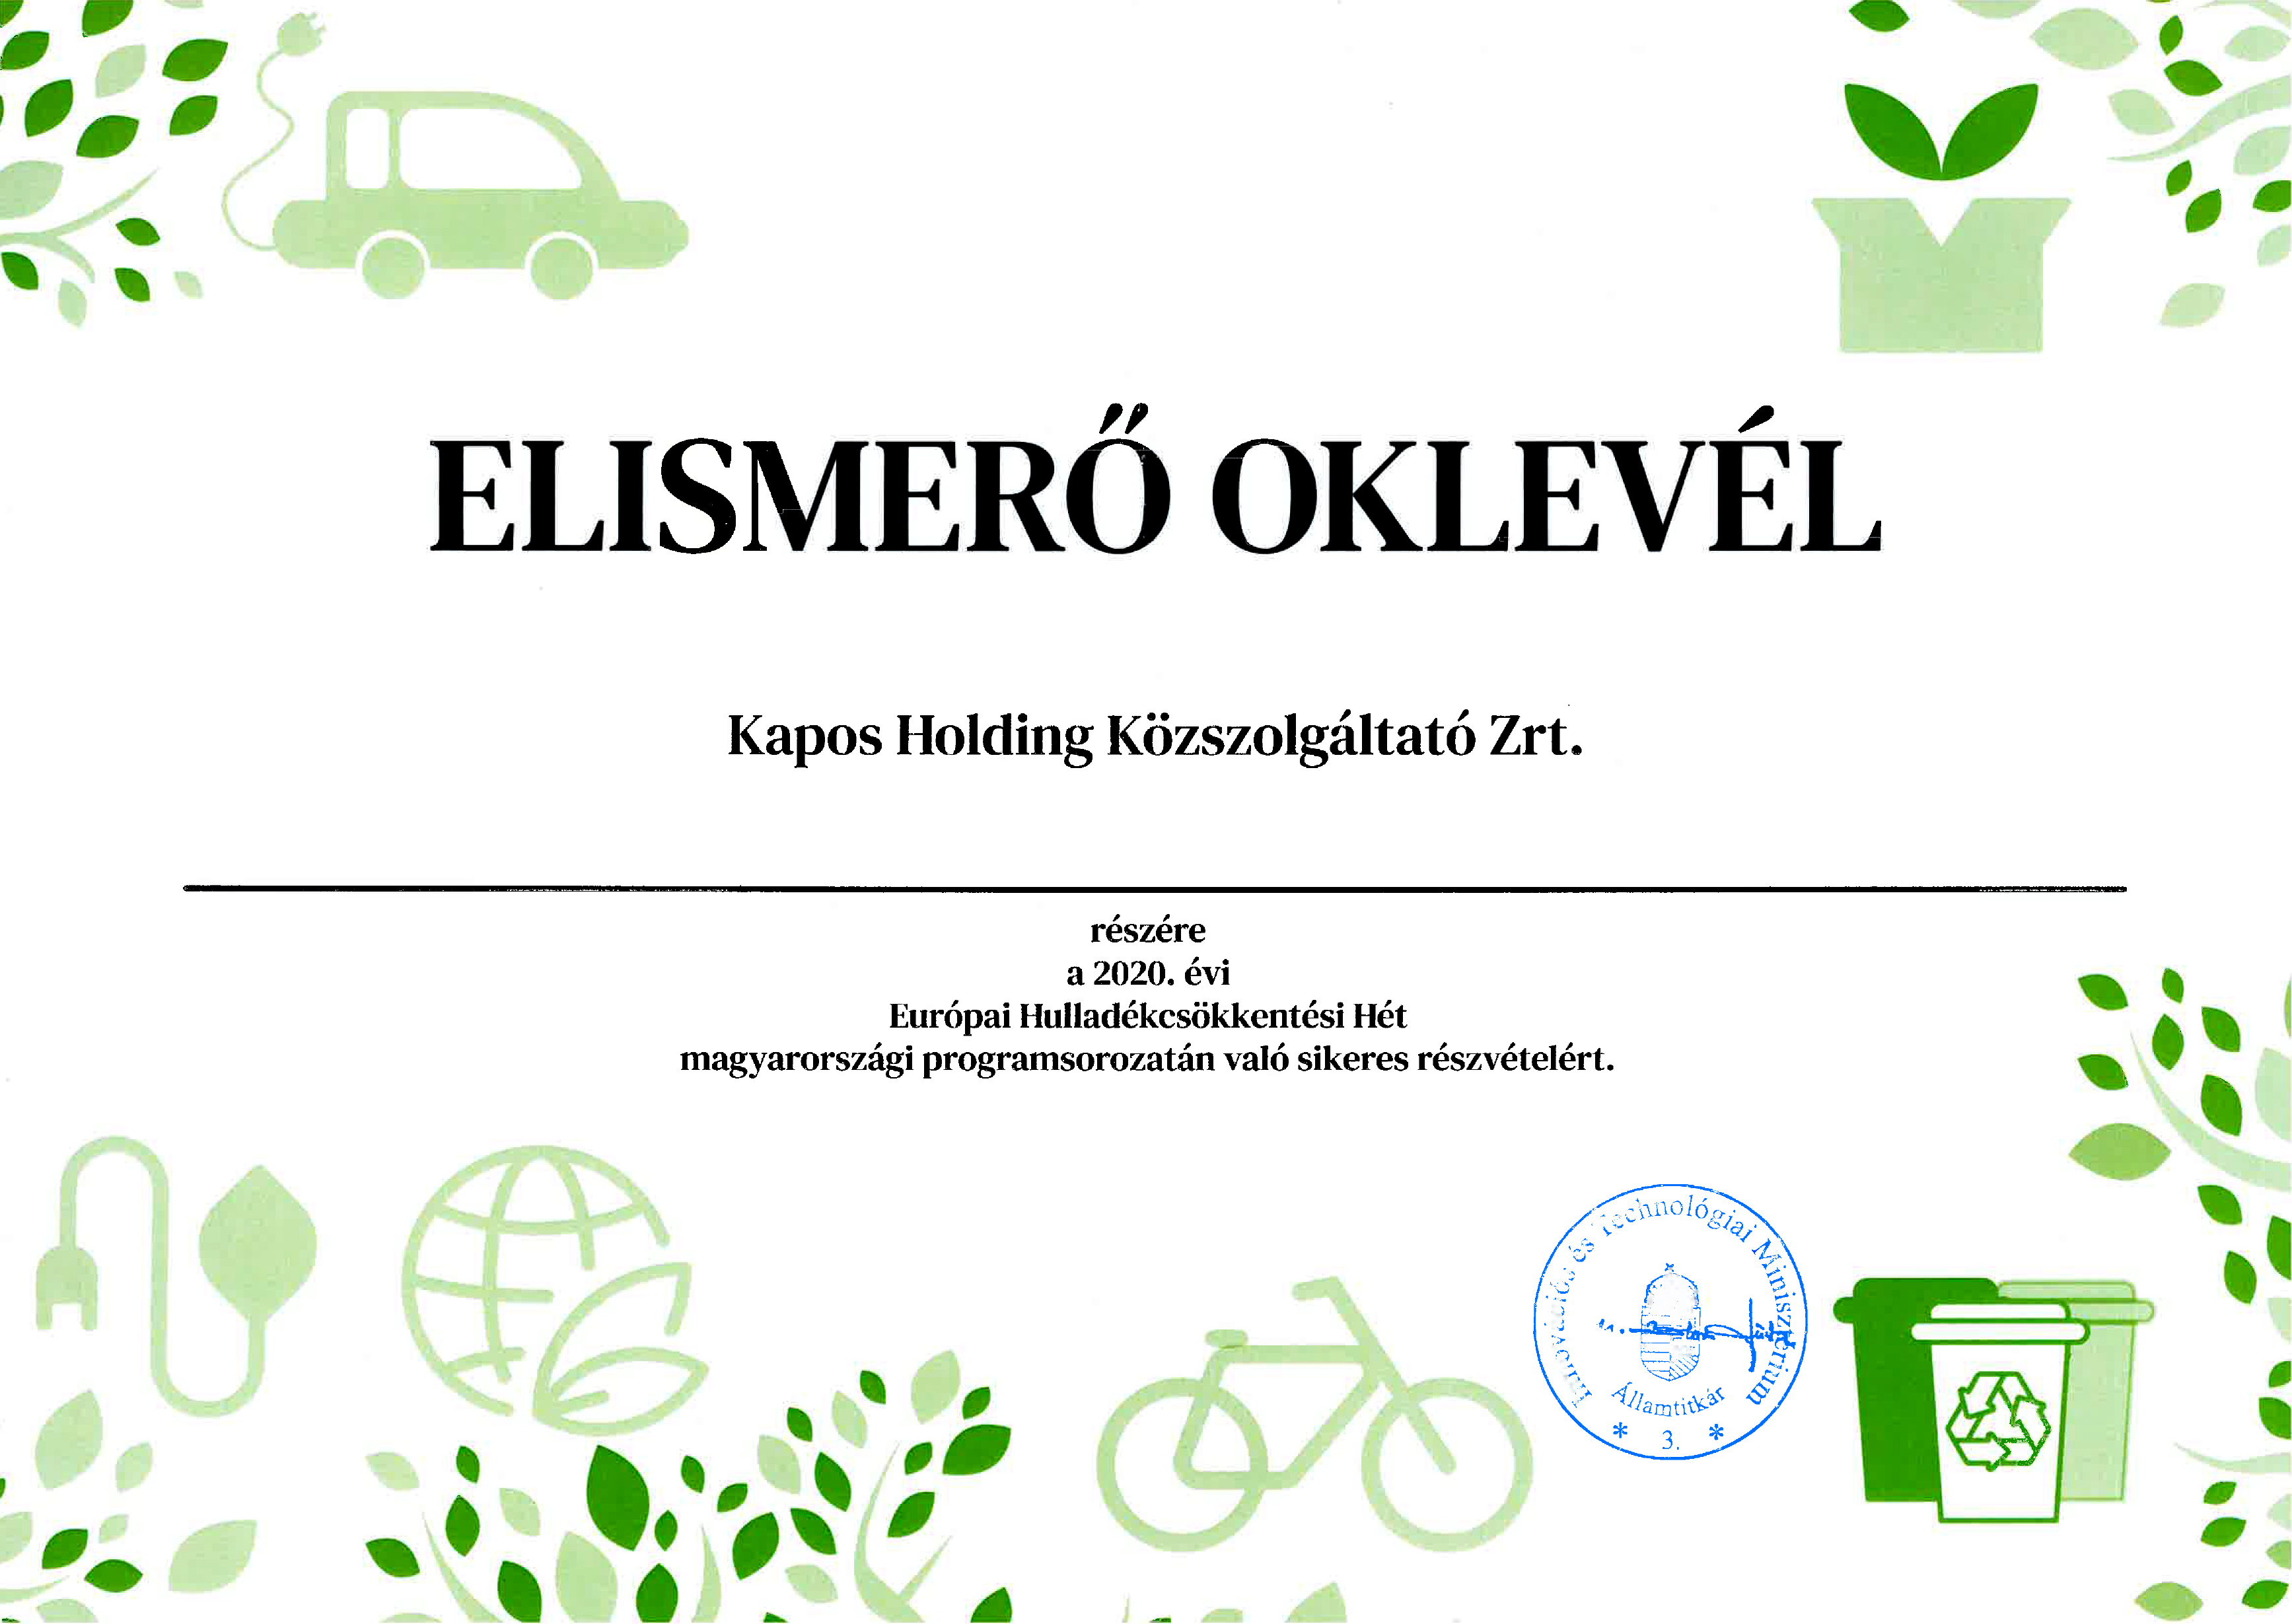 Európai hulladékcsökkentési hét elismerő oklevél 2020.jpg